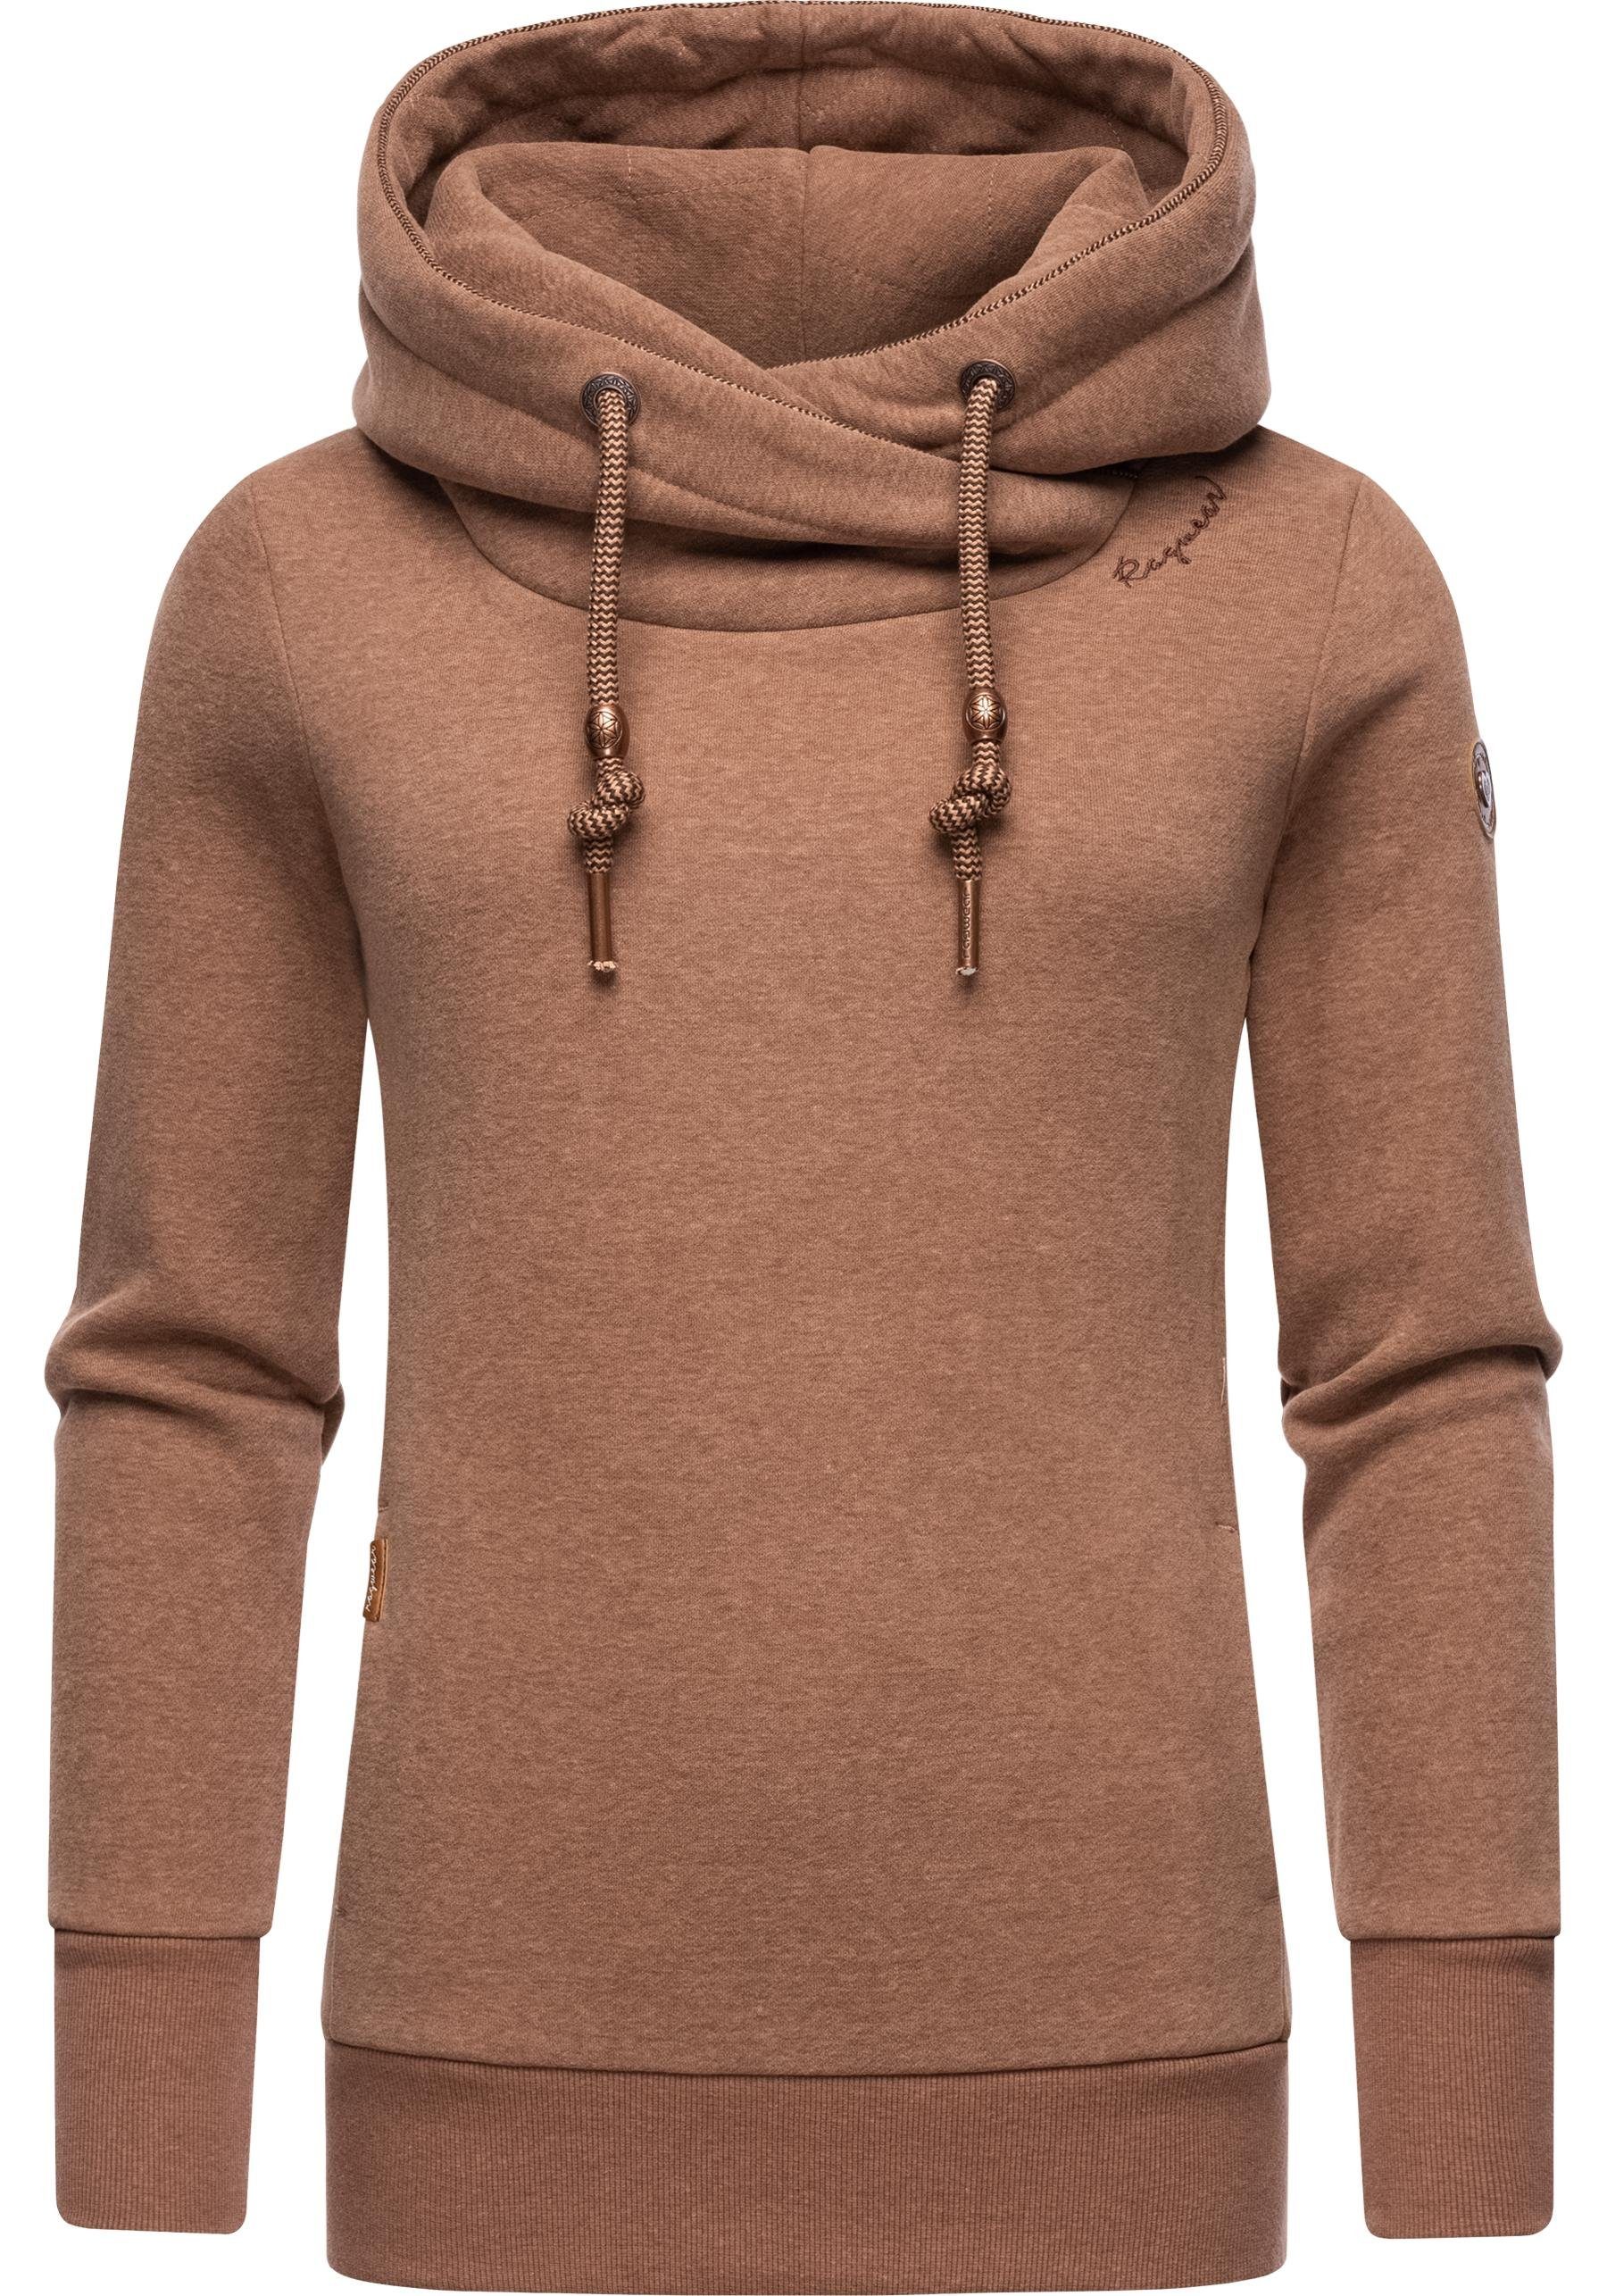 Braune Pullover für Damen online kaufen | OTTO